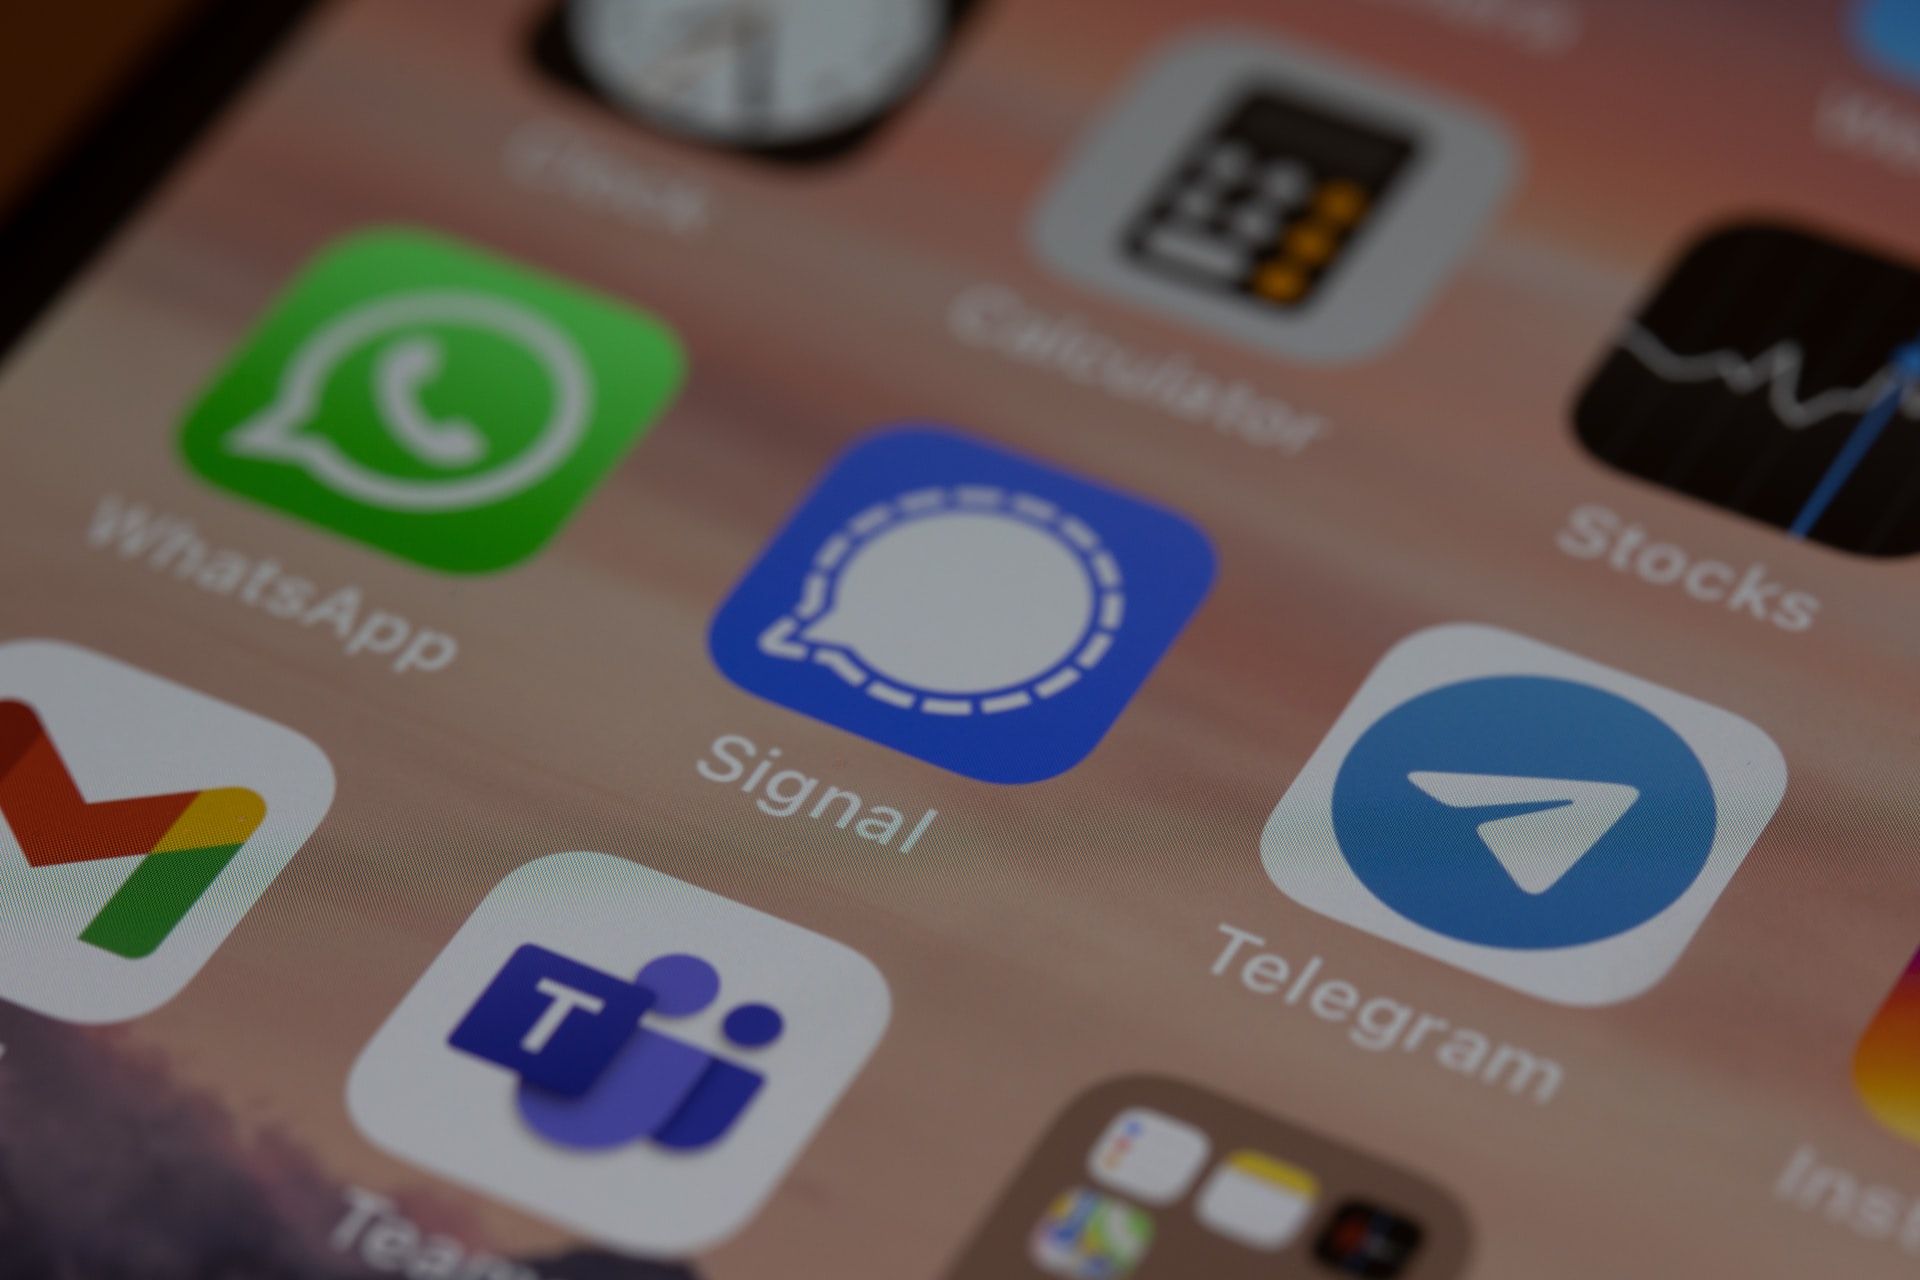 signal messaging app on phone - Come i principali servizi di messaggistica istantanea utilizzano la crittografia end-to-end